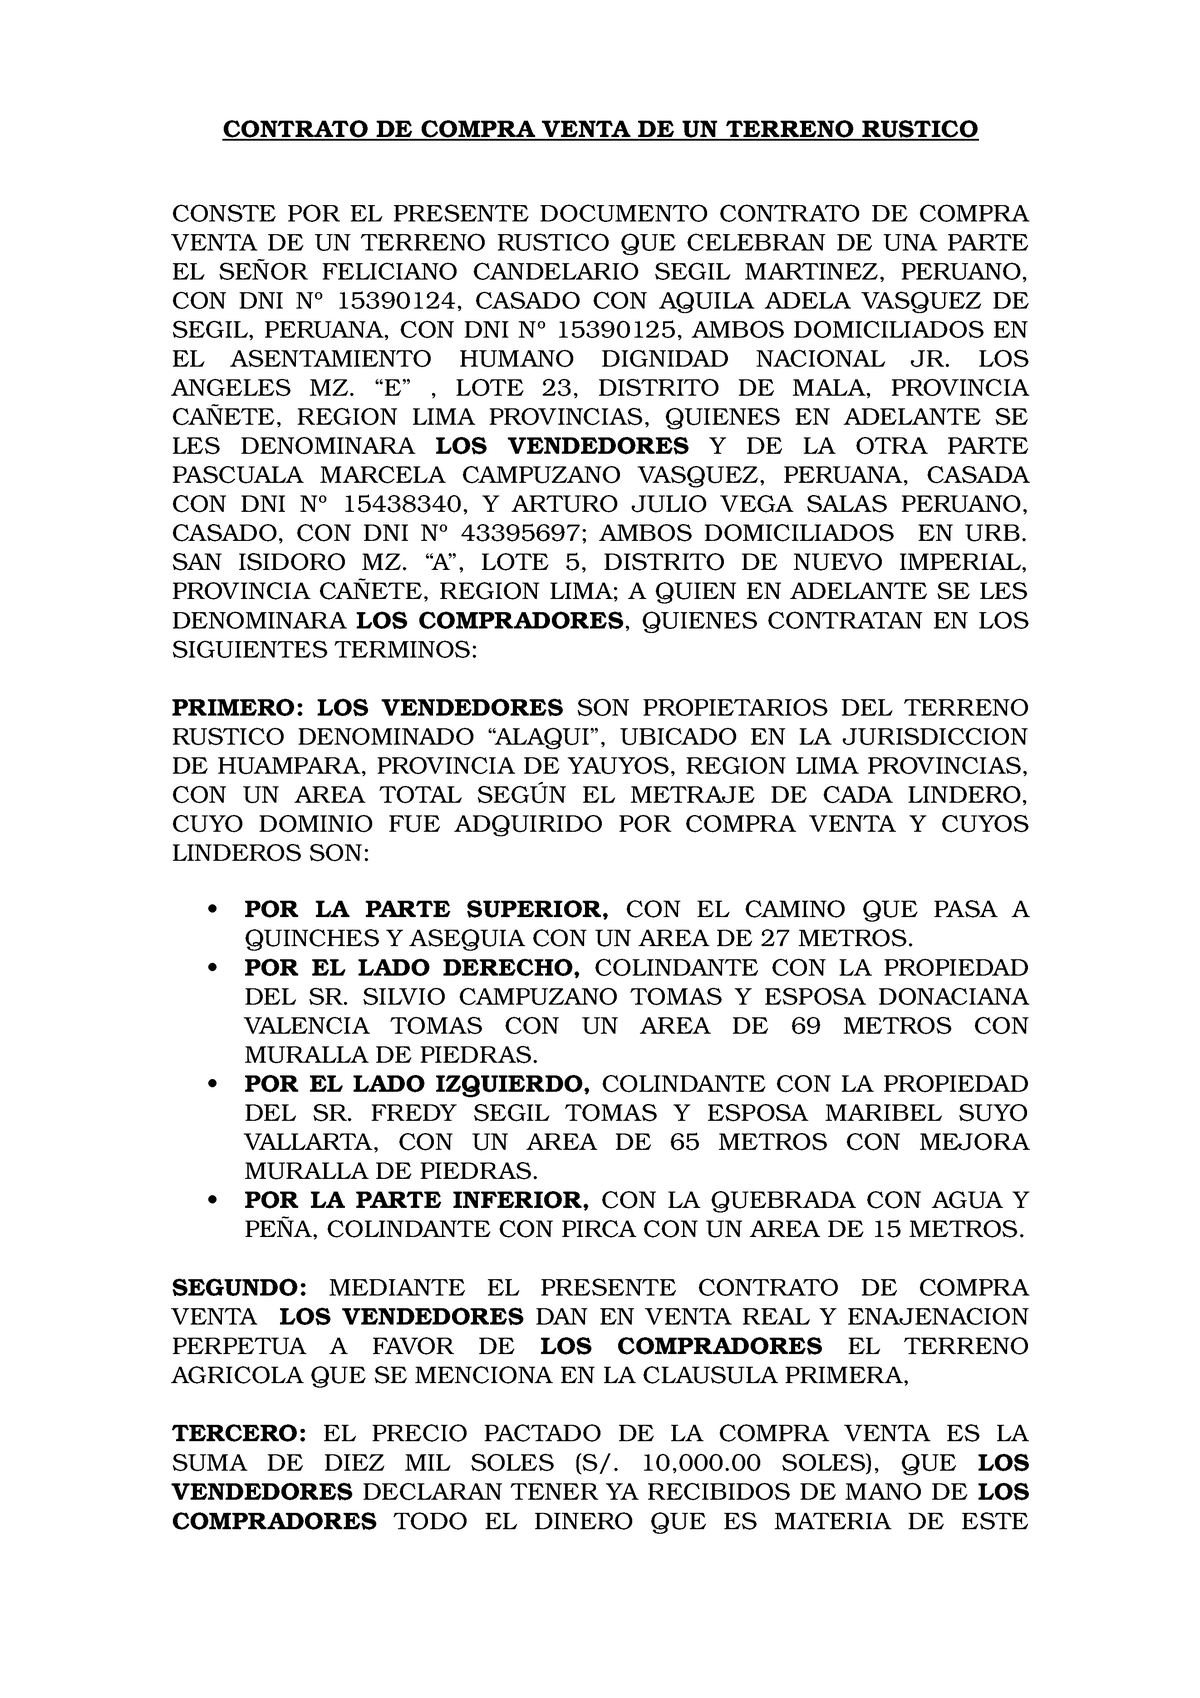 Contrato DE Compra Venta DE Terreno Agricola Huampara - CONTRATO DE COMPRA  VENTA DE UN TERRENO - Studocu